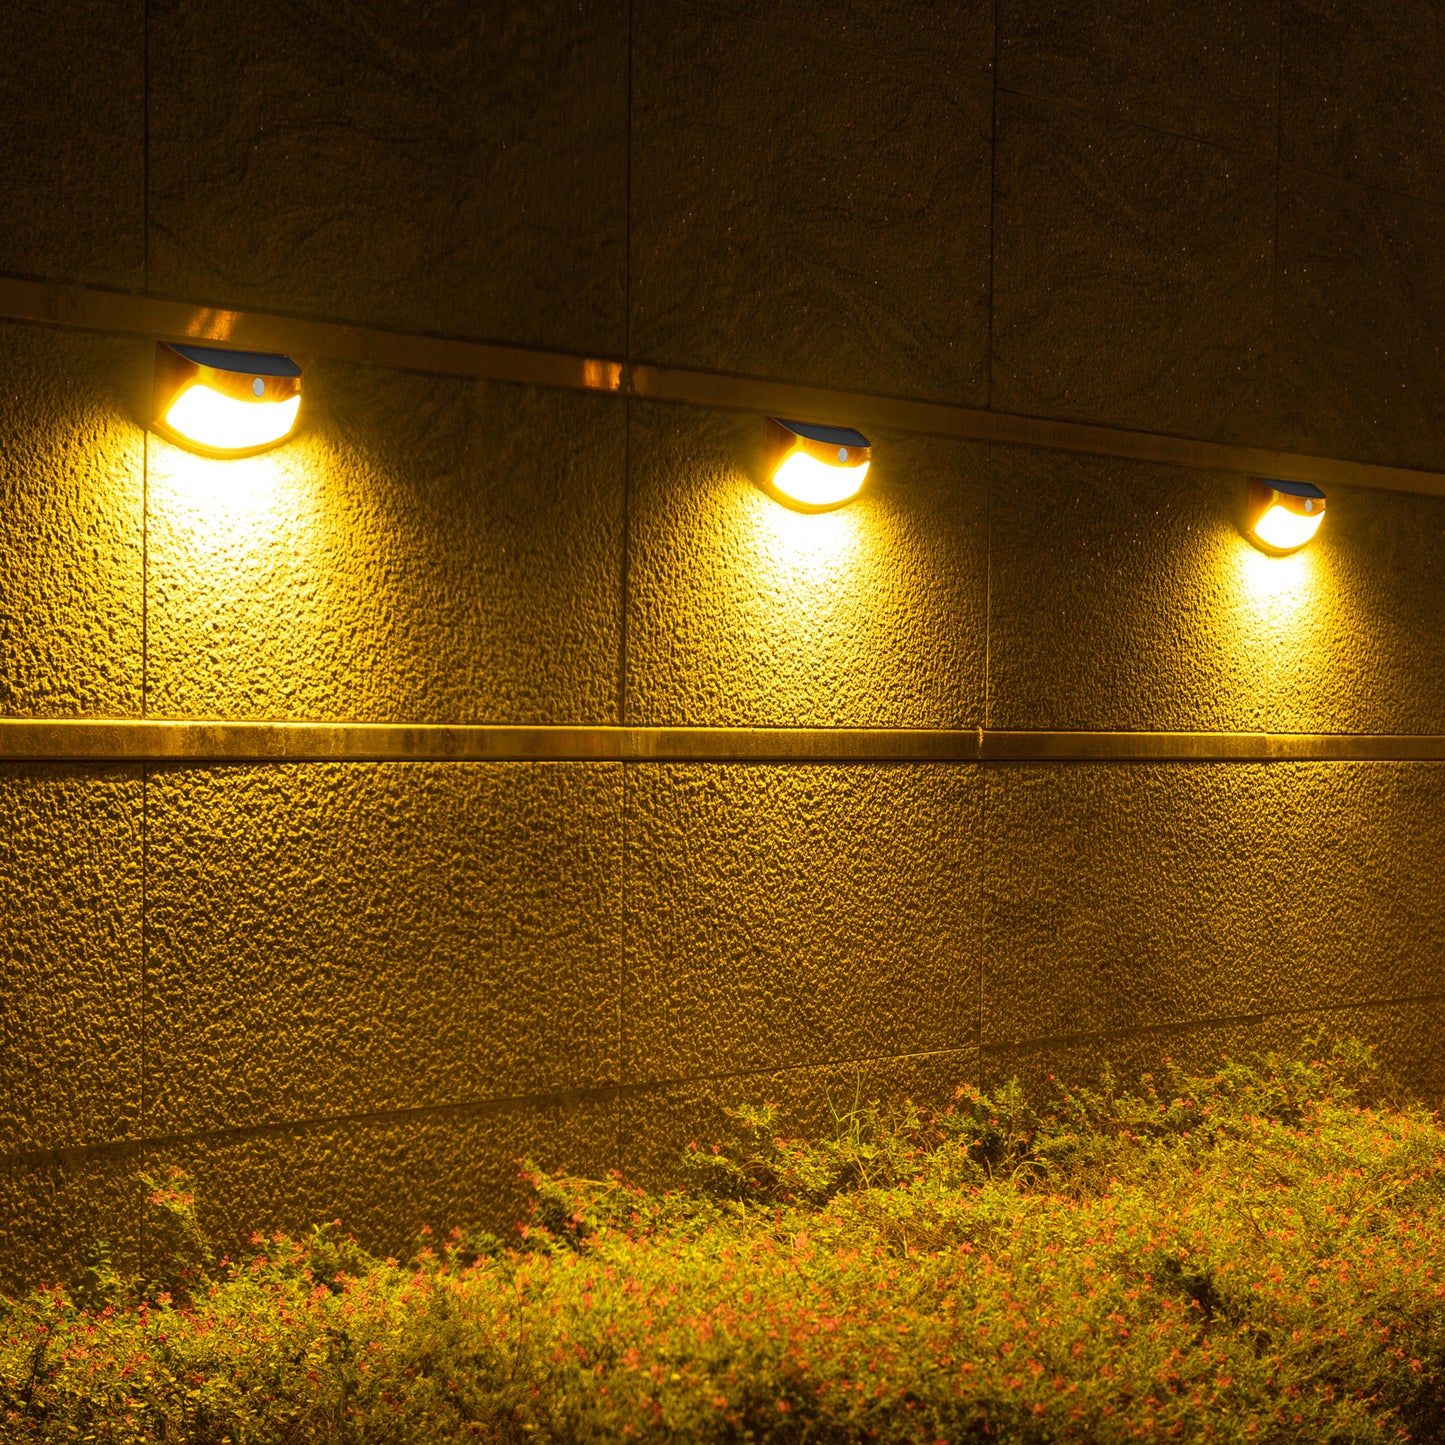 Lampe solaire smiley mur LED corps humain détecté/lumière détectée éclairage extérieur décoration de cour